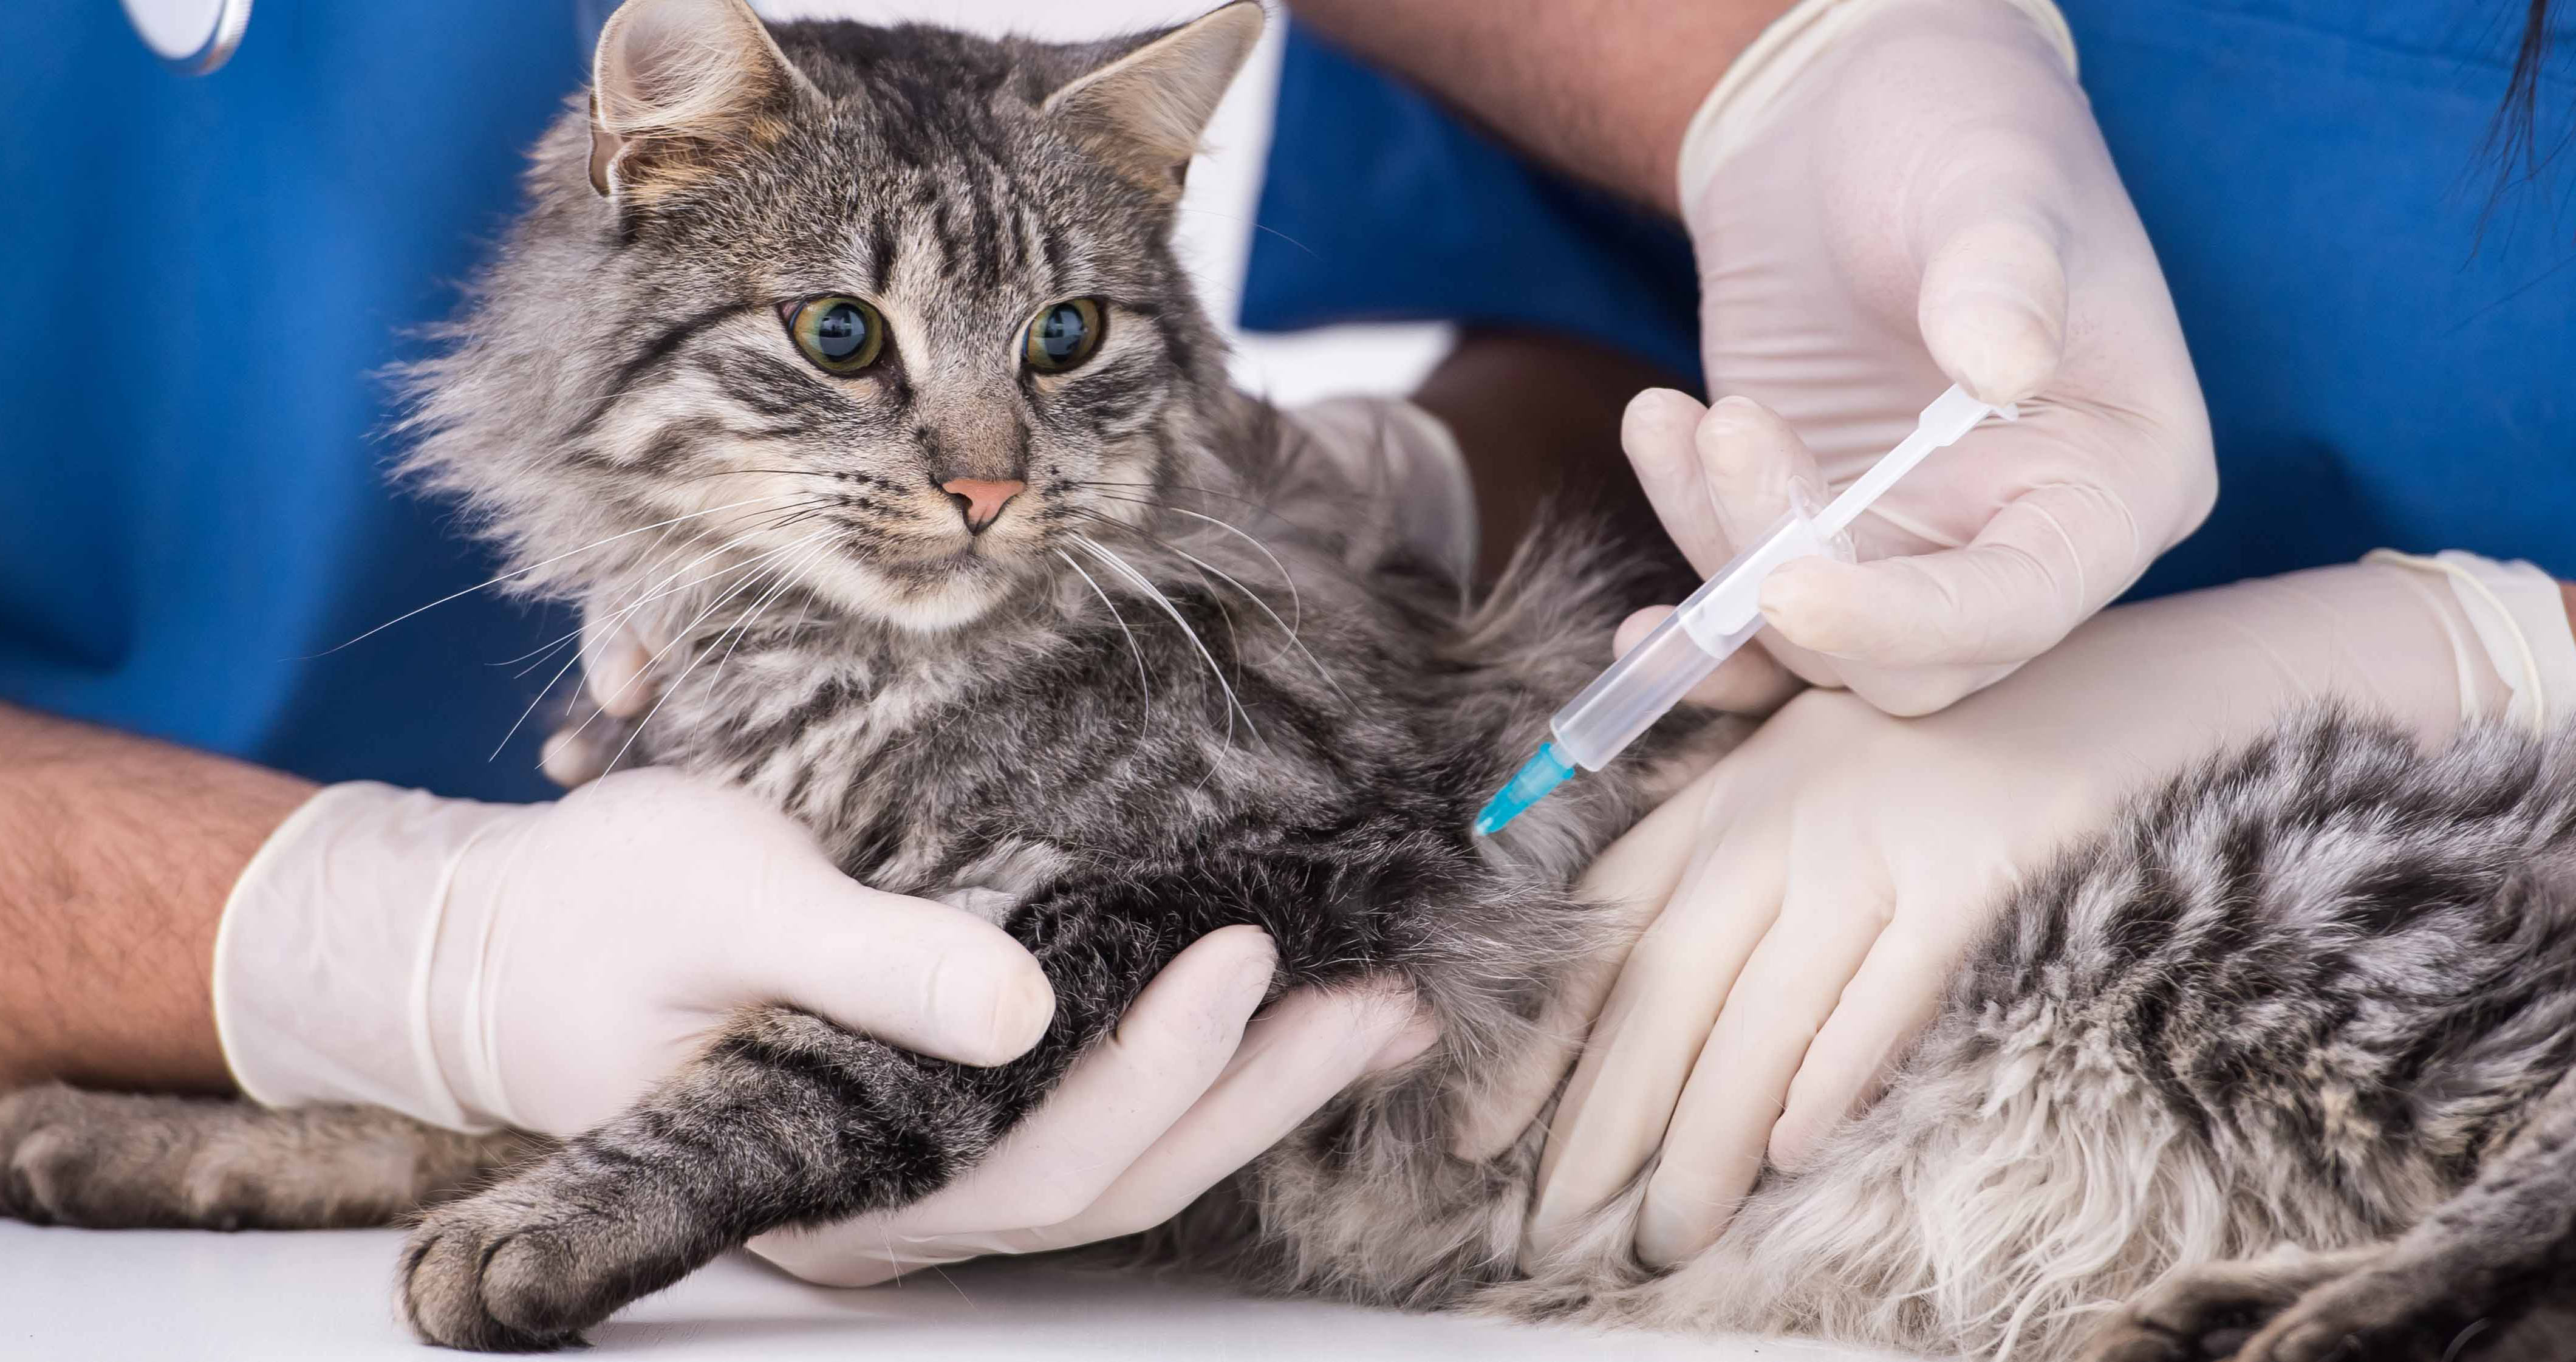 Бесплатные прививки для кошек в москве. Чипирование кошек. Вакцинация животных. Вакцинация против бешенства животных. Иммунизация животных.